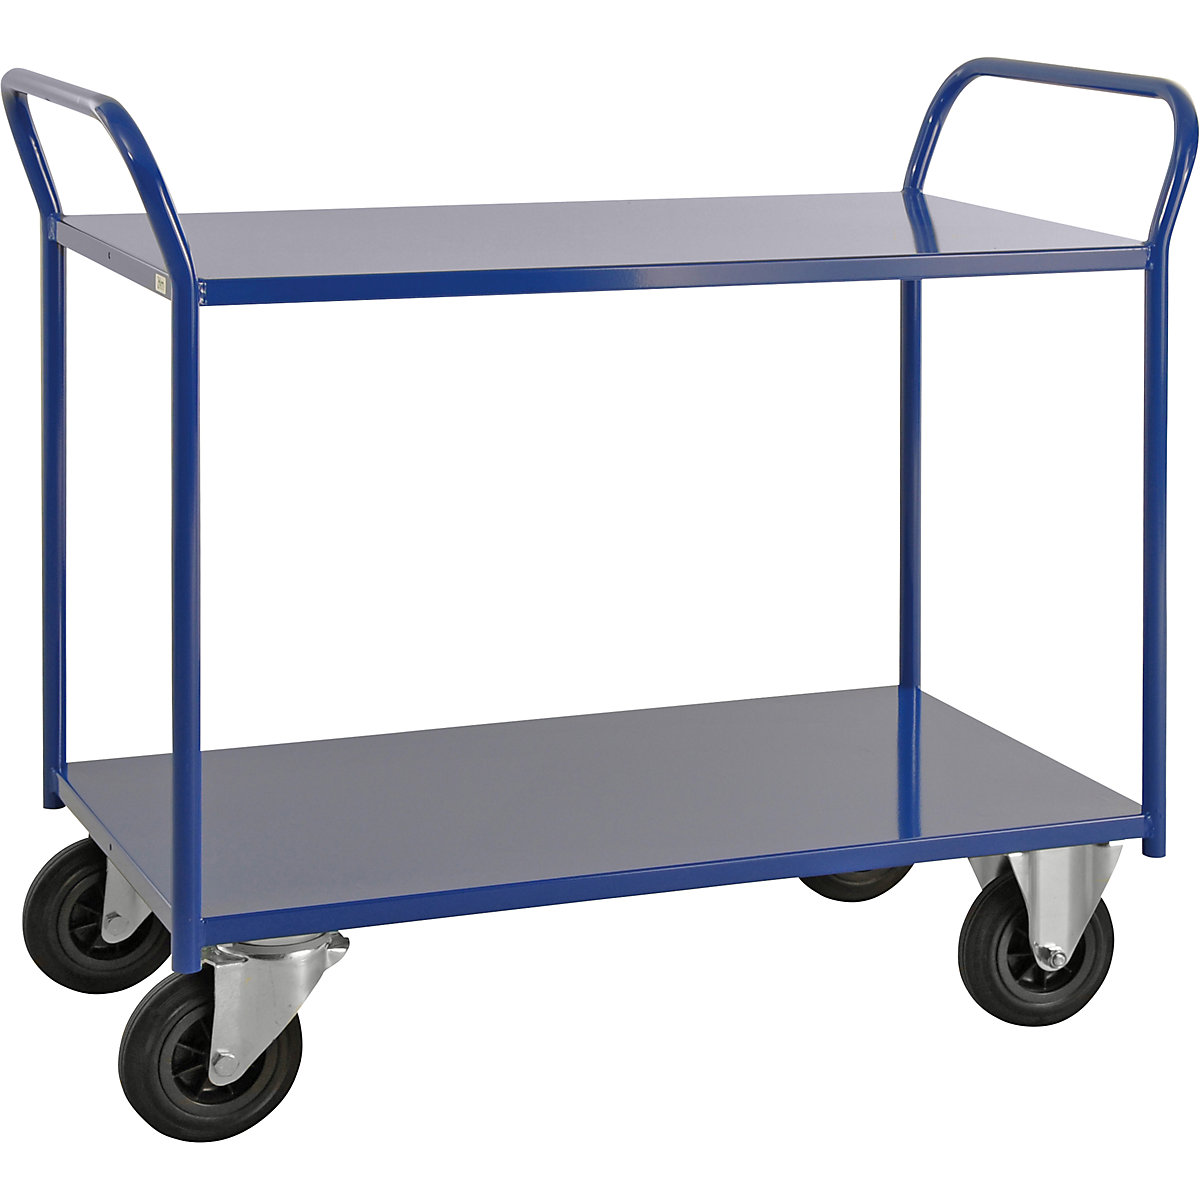 Stolový vozík KM41 – Kongamek, 2 etáže, d x š x v 1070 x 550 x 1000 mm, modrá, 2 otočná a 2 pevná kola, od 5 kusů-7